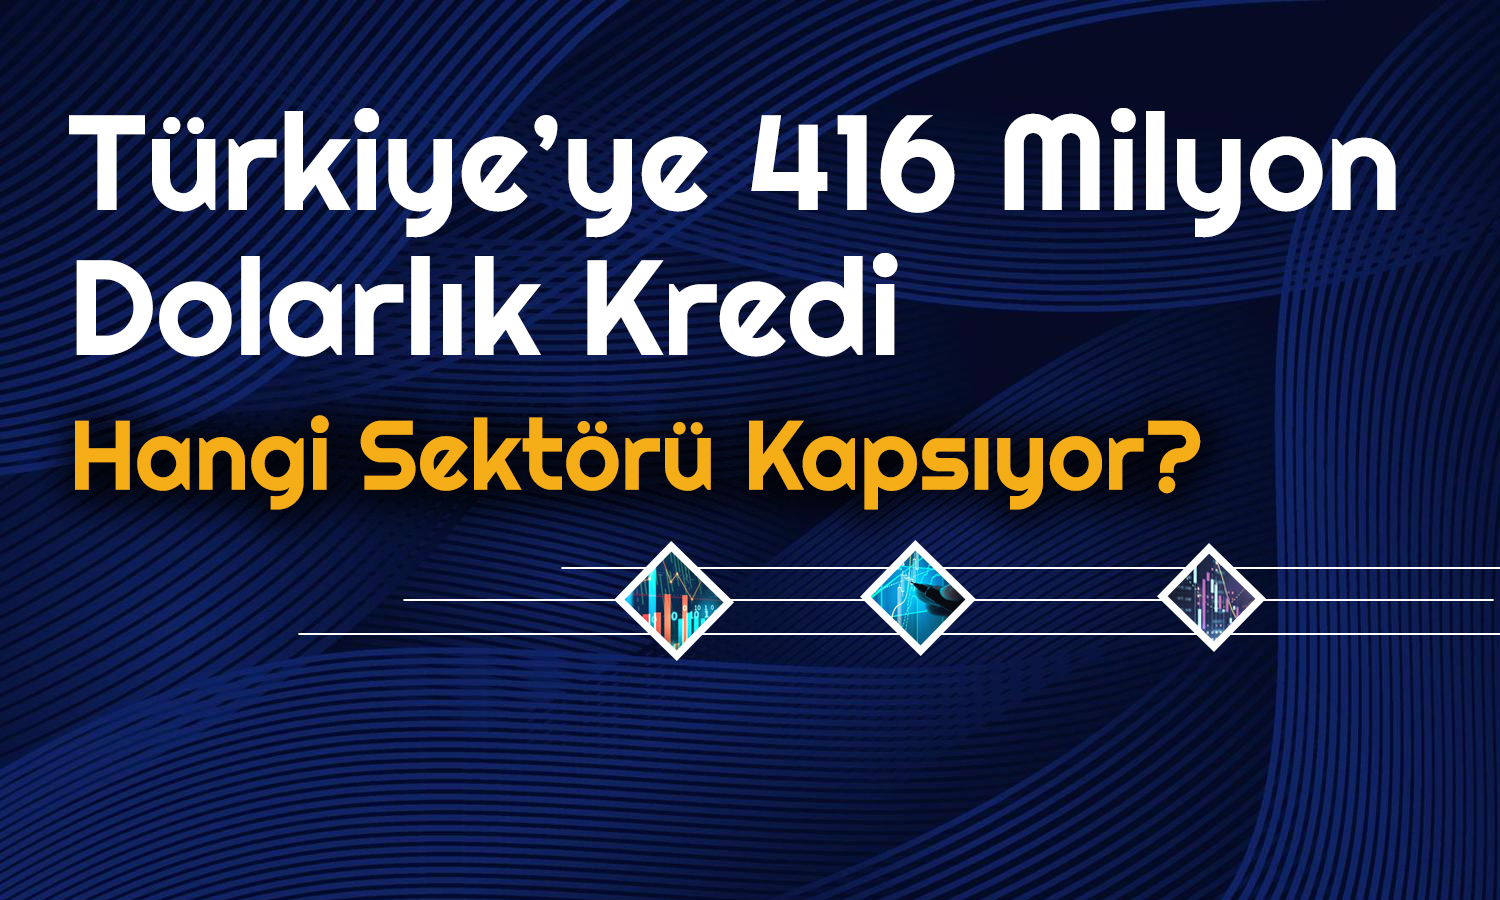 Dünya Bankası’ndan Türkiye’ye Kredi: 416 Milyon Dolar